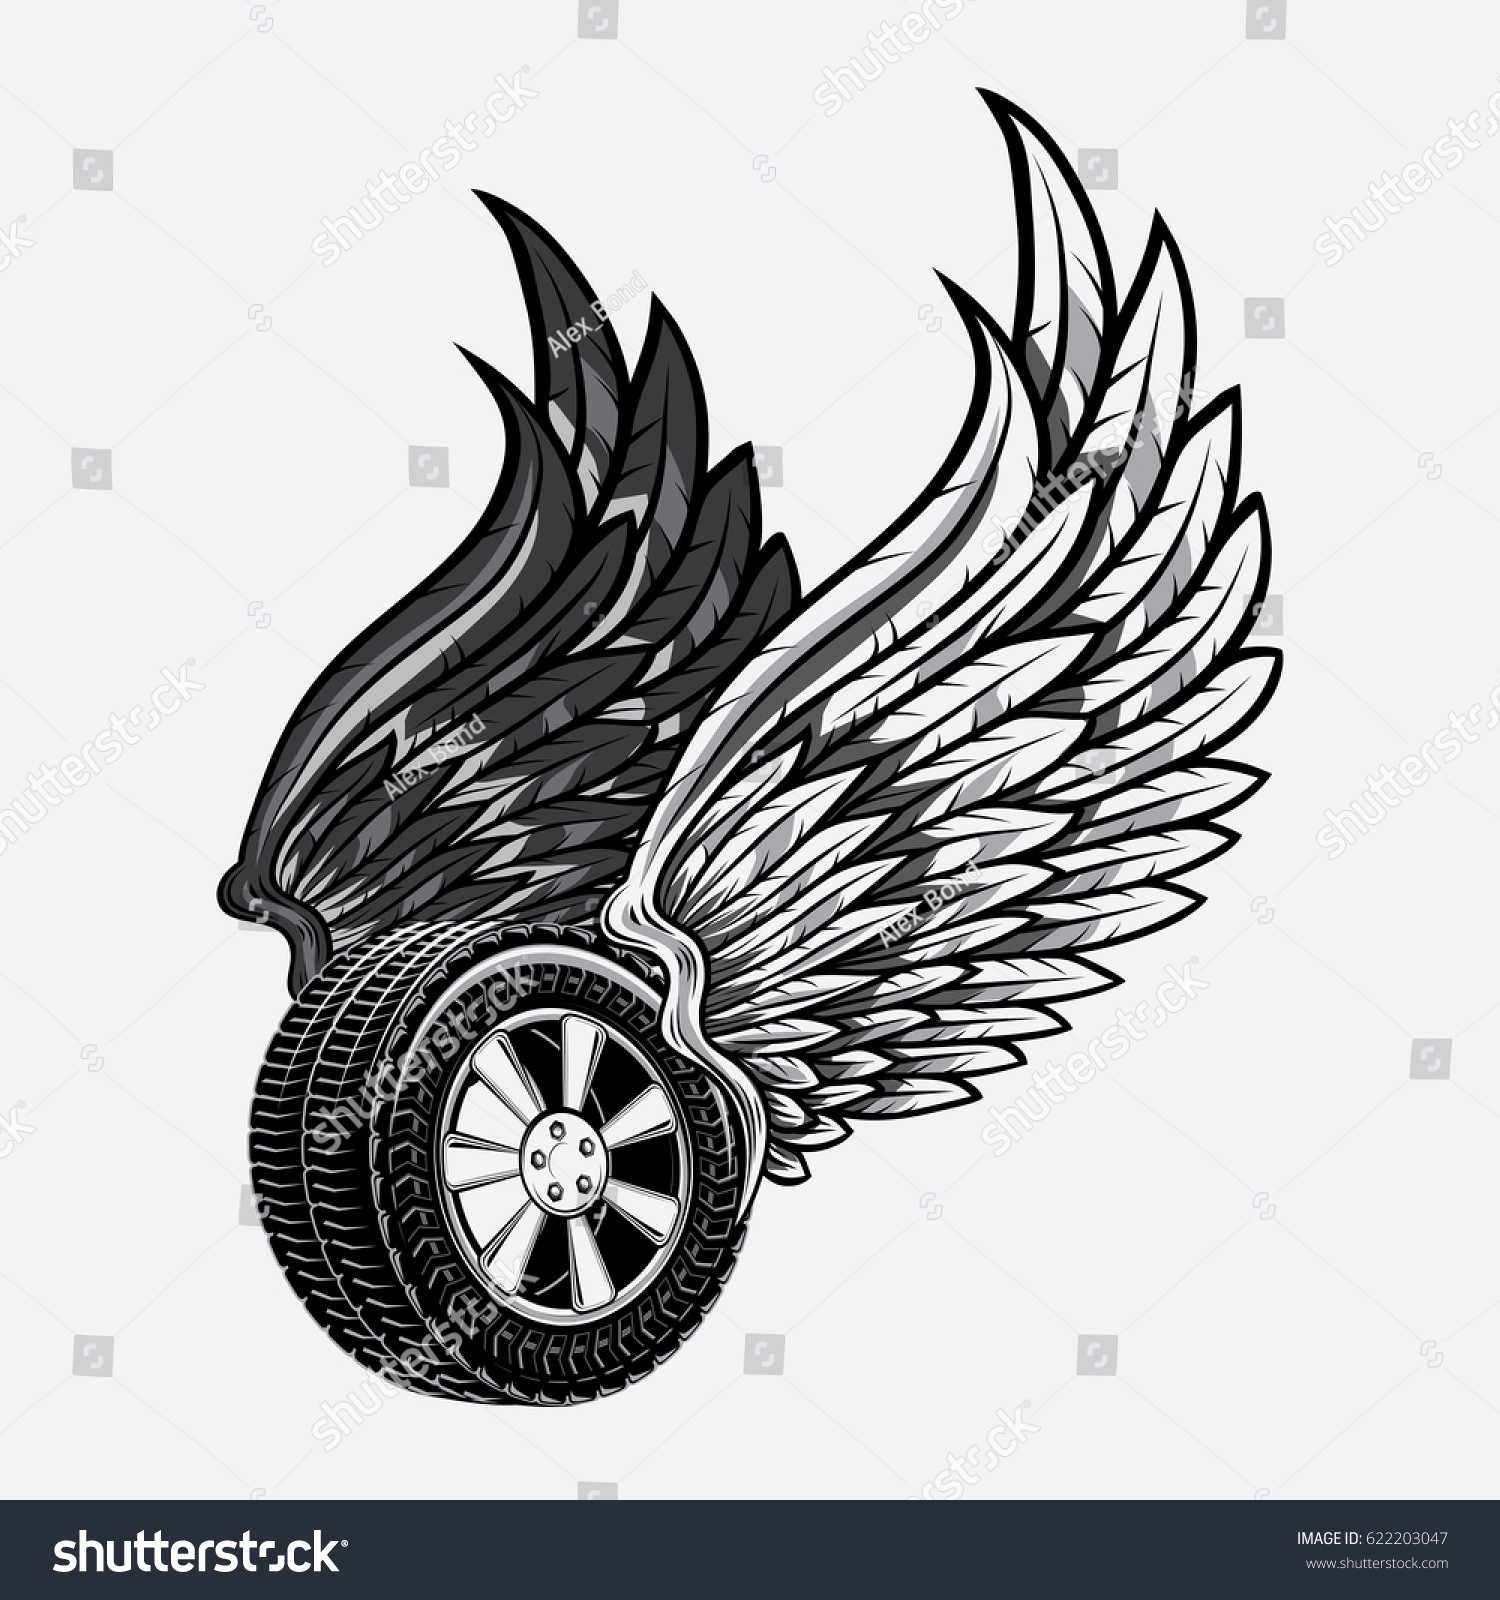 Колесо с крыльями логотип